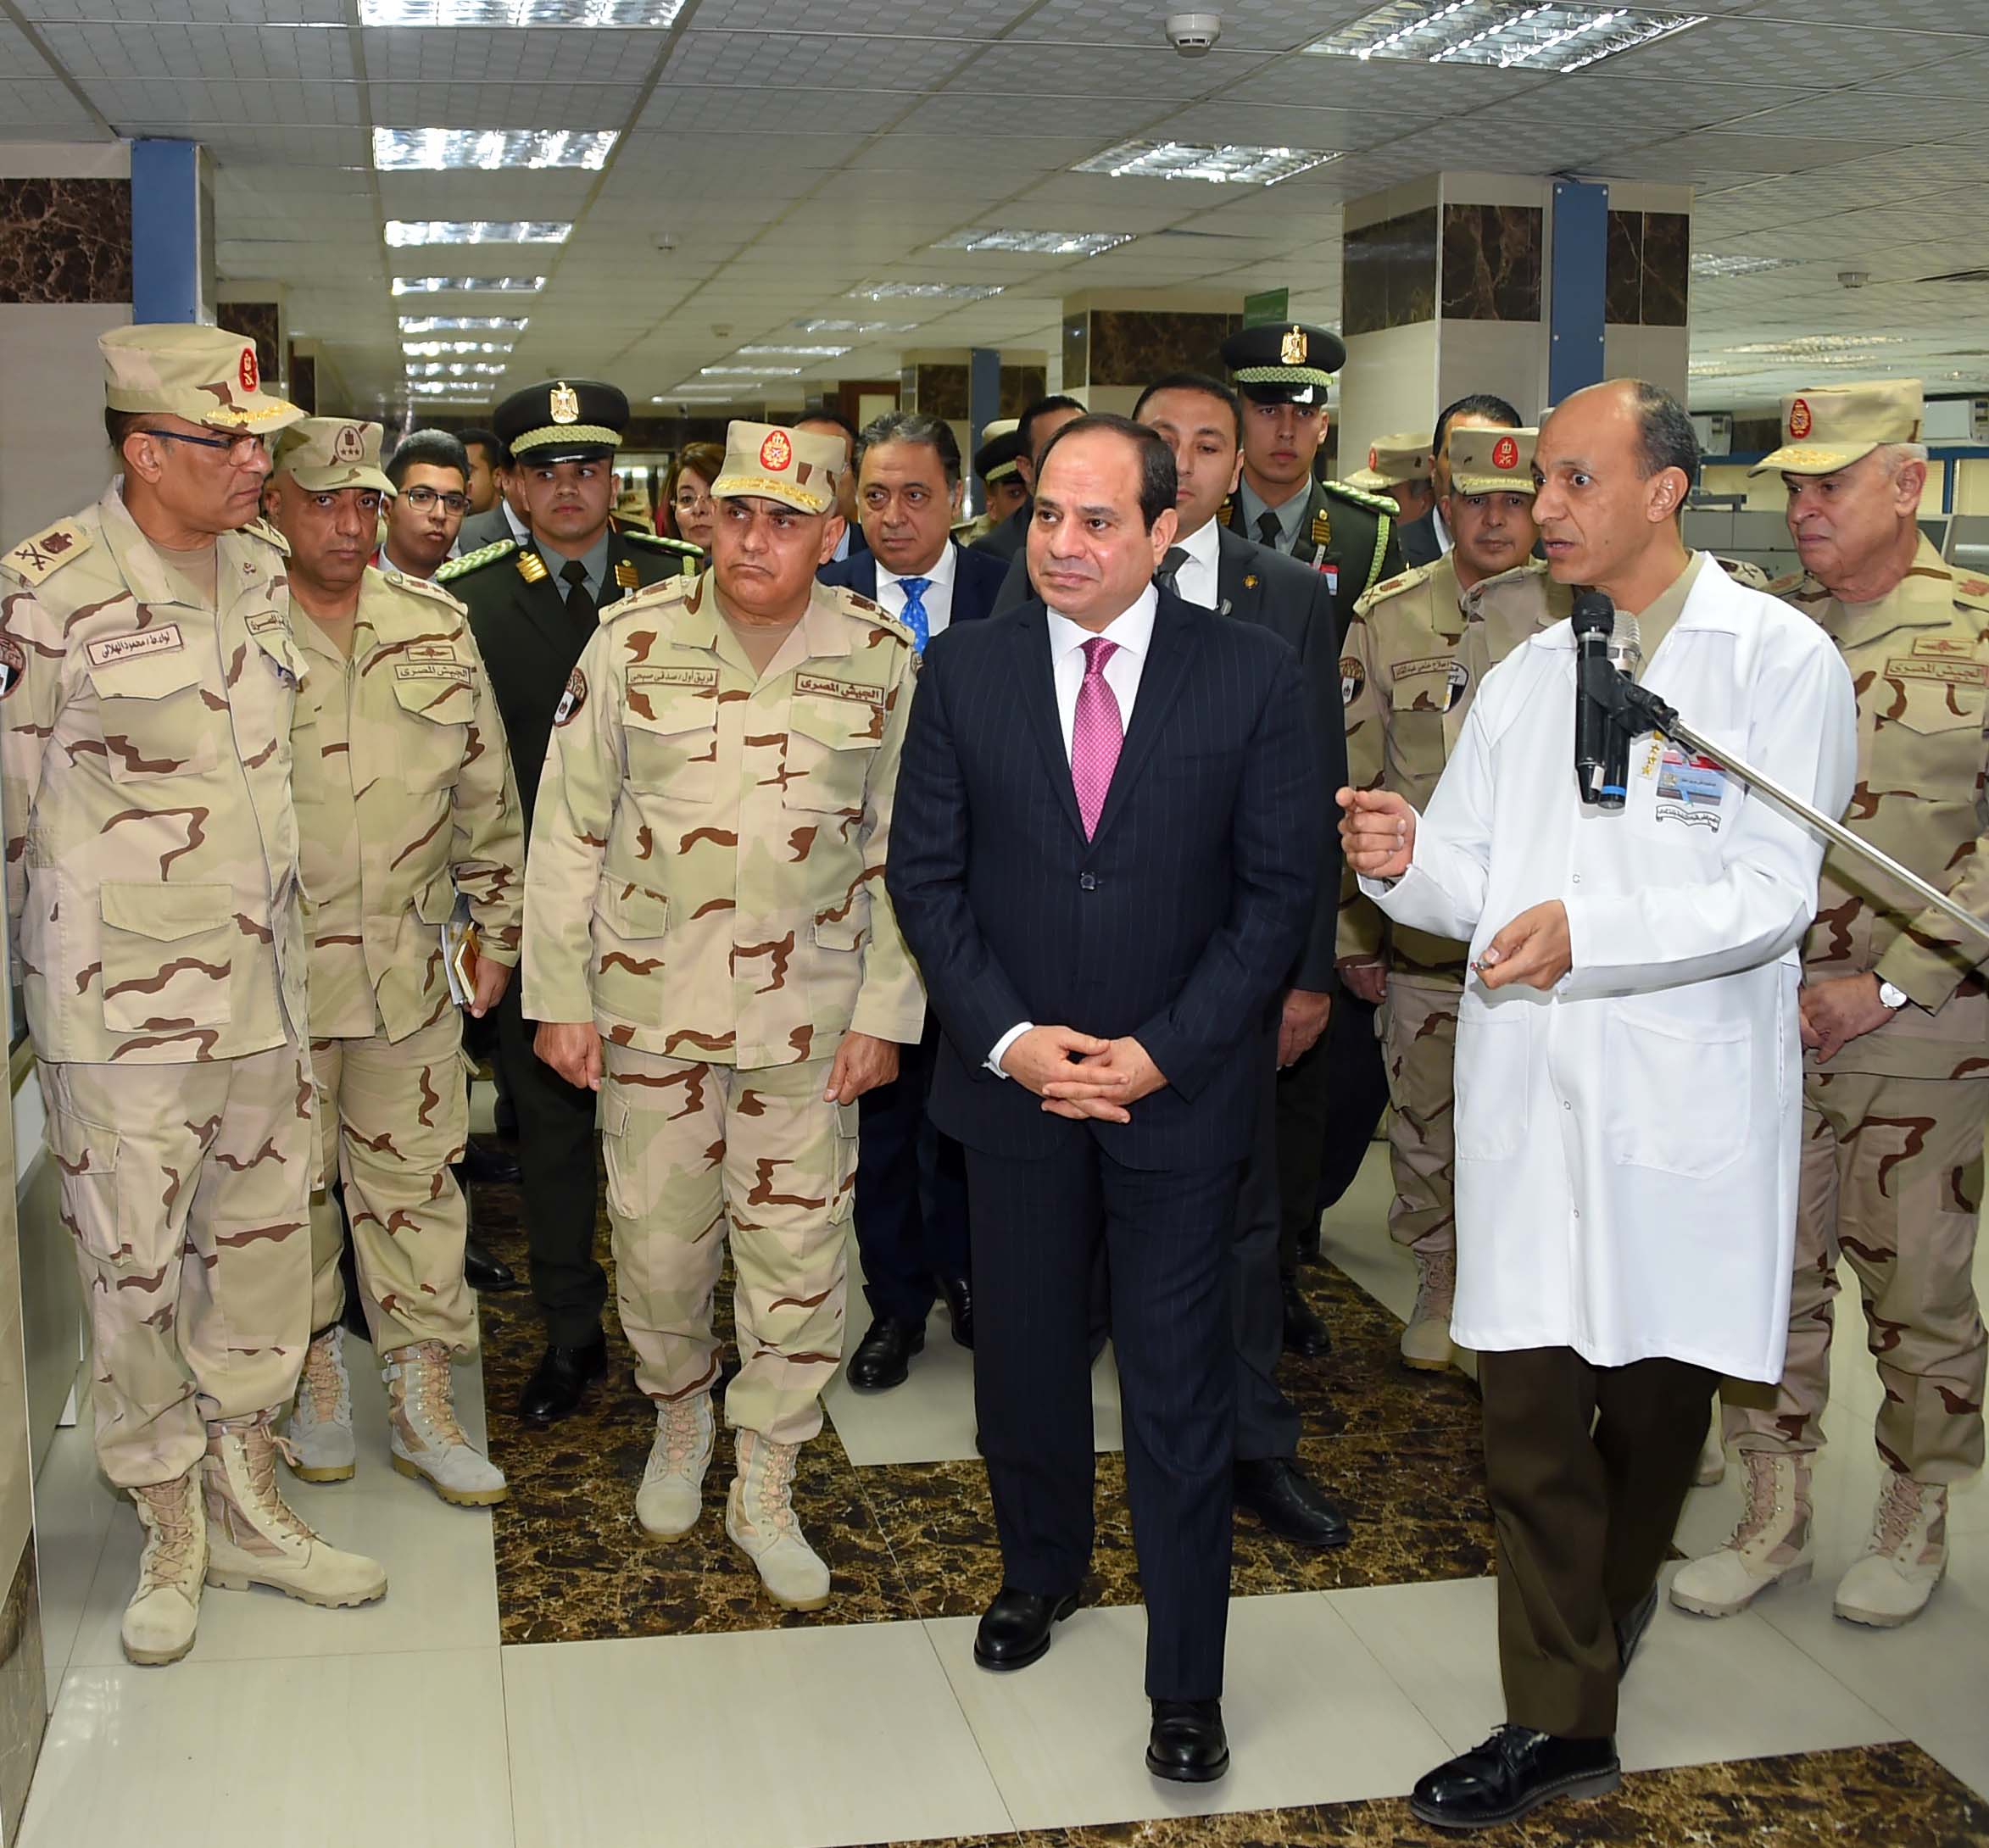 صور افتتاح السيد الرئيس لأعمال تطوير المجمع الطبي للقوات المسلحة بالمعادي12-1-2018 (1)